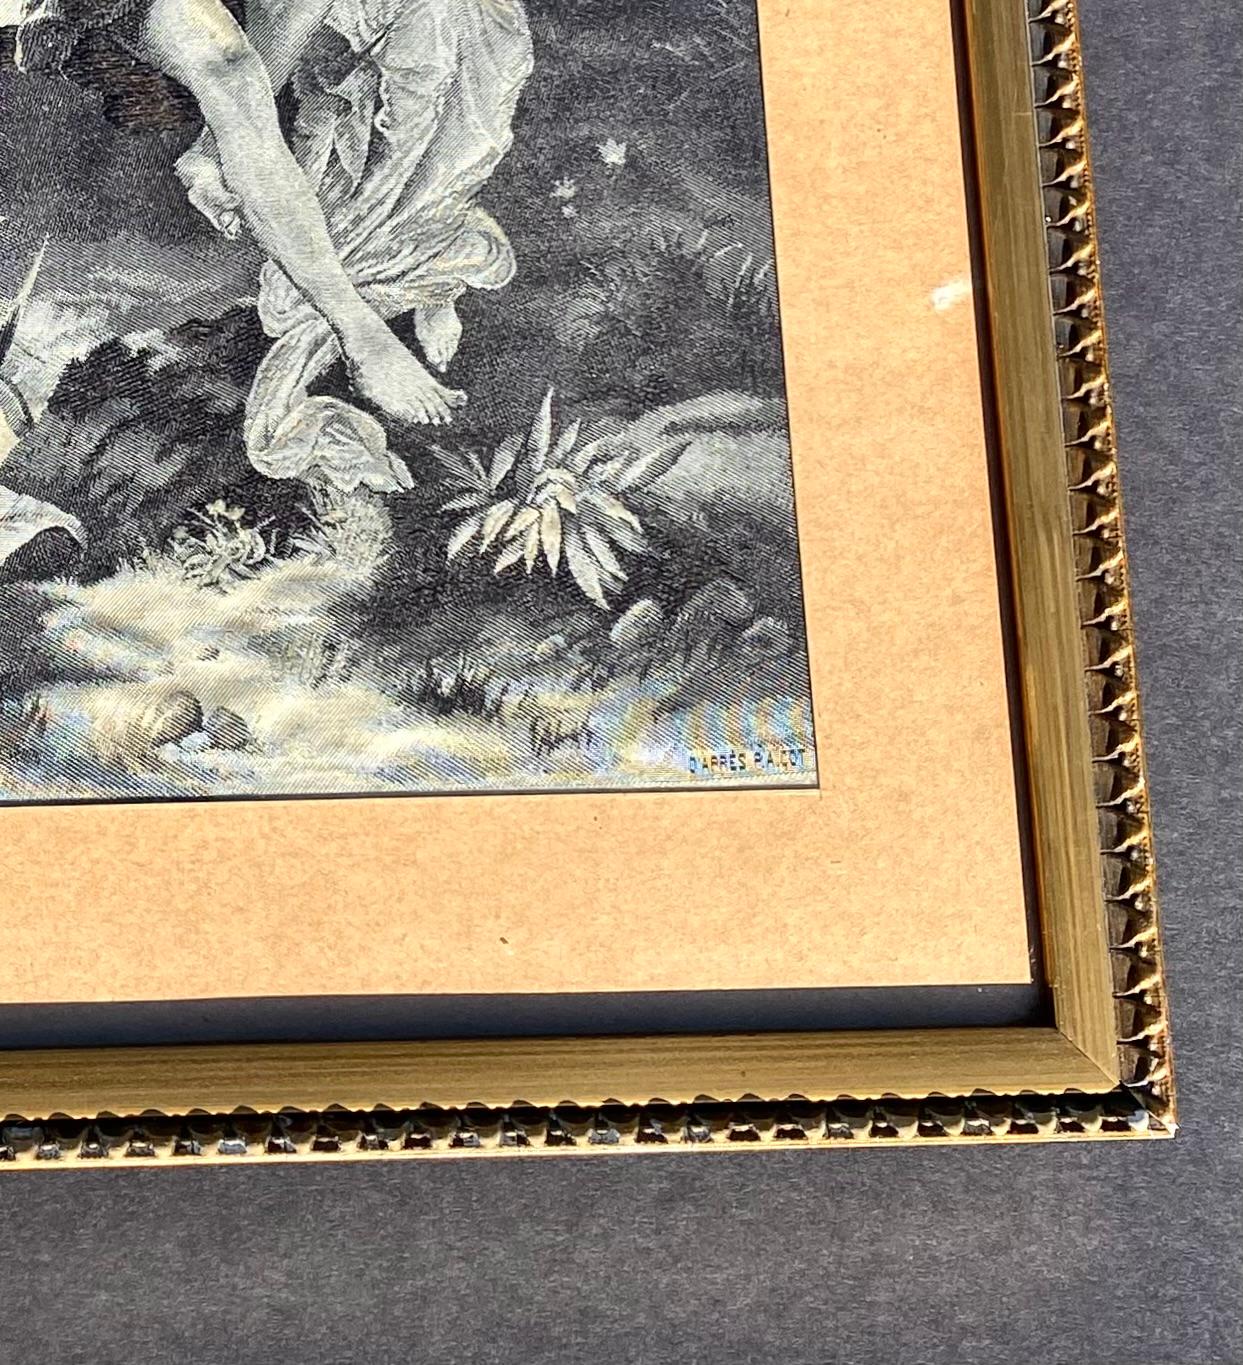 Rares et exquis tableaux en soie monochrome tissés par Neyret Frères à la fin du XIXe siècle, 